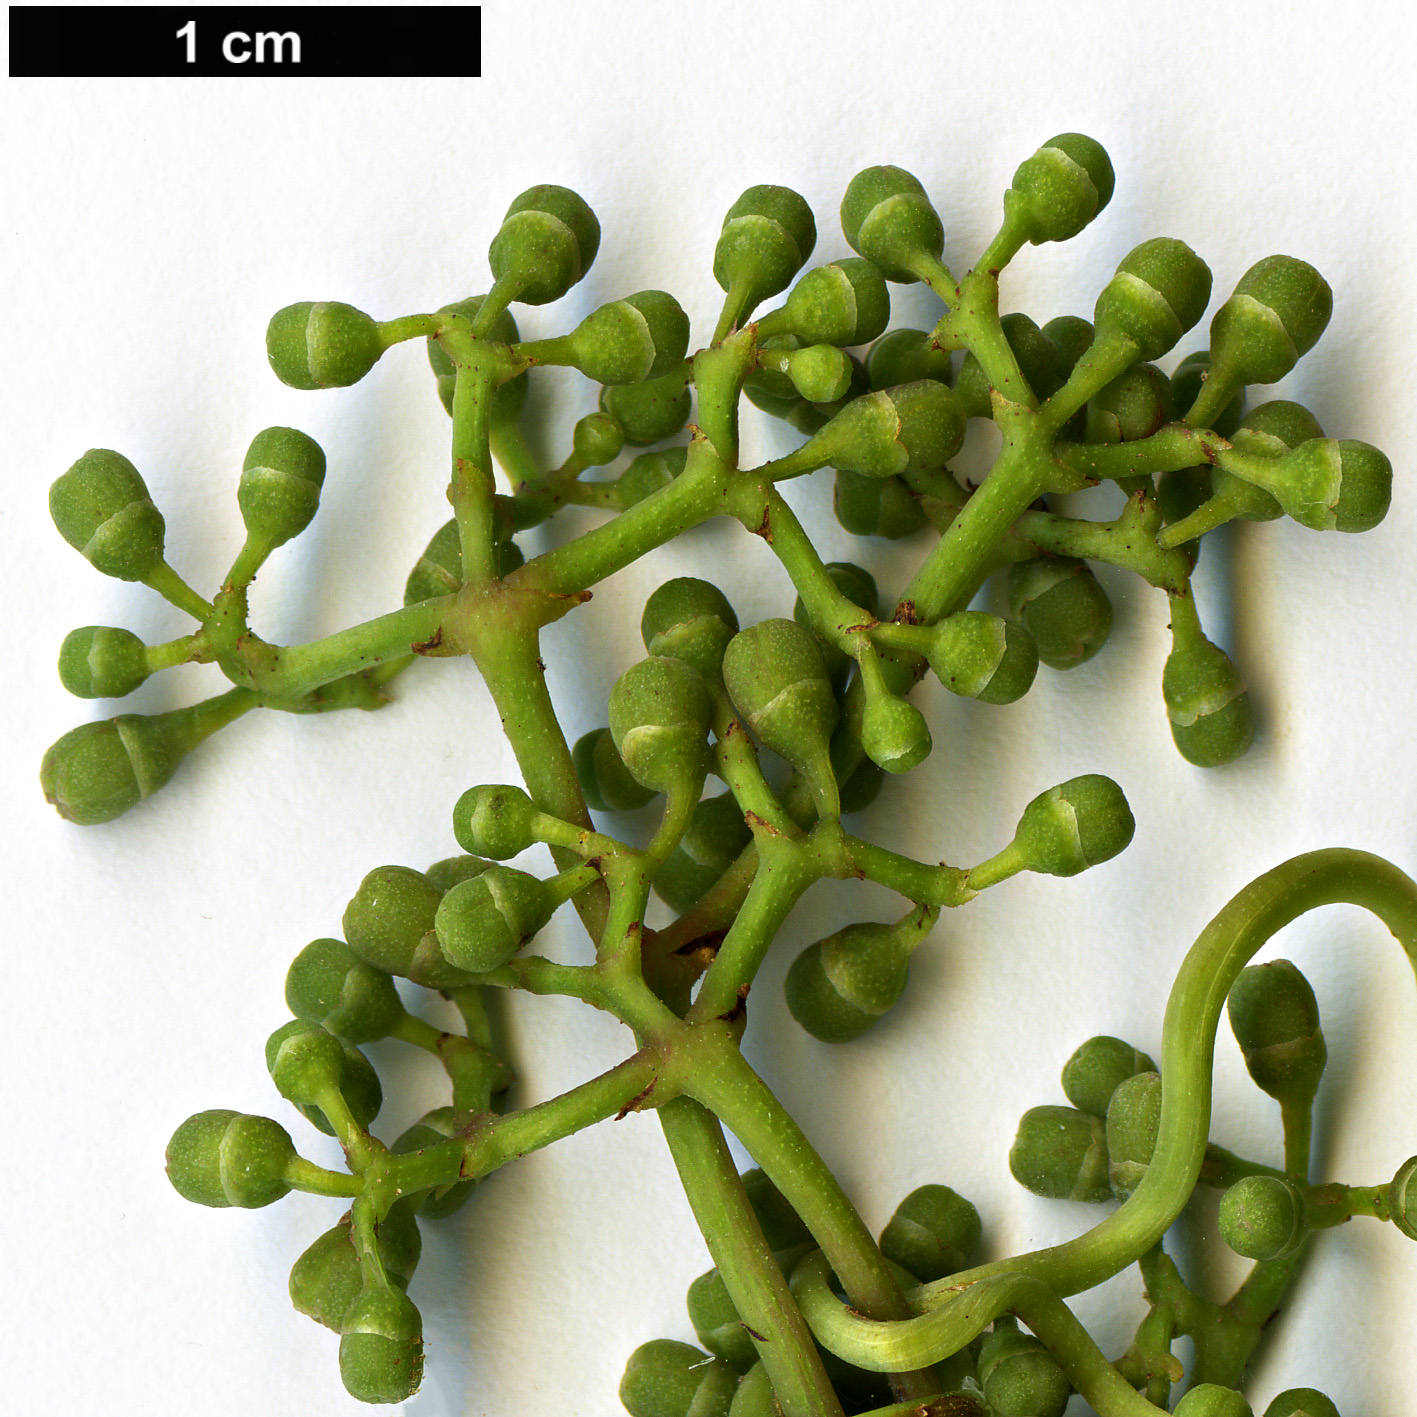 High resolution image: Family: Vitaceae - Genus: Parthenocissus - Taxon: thomsonii